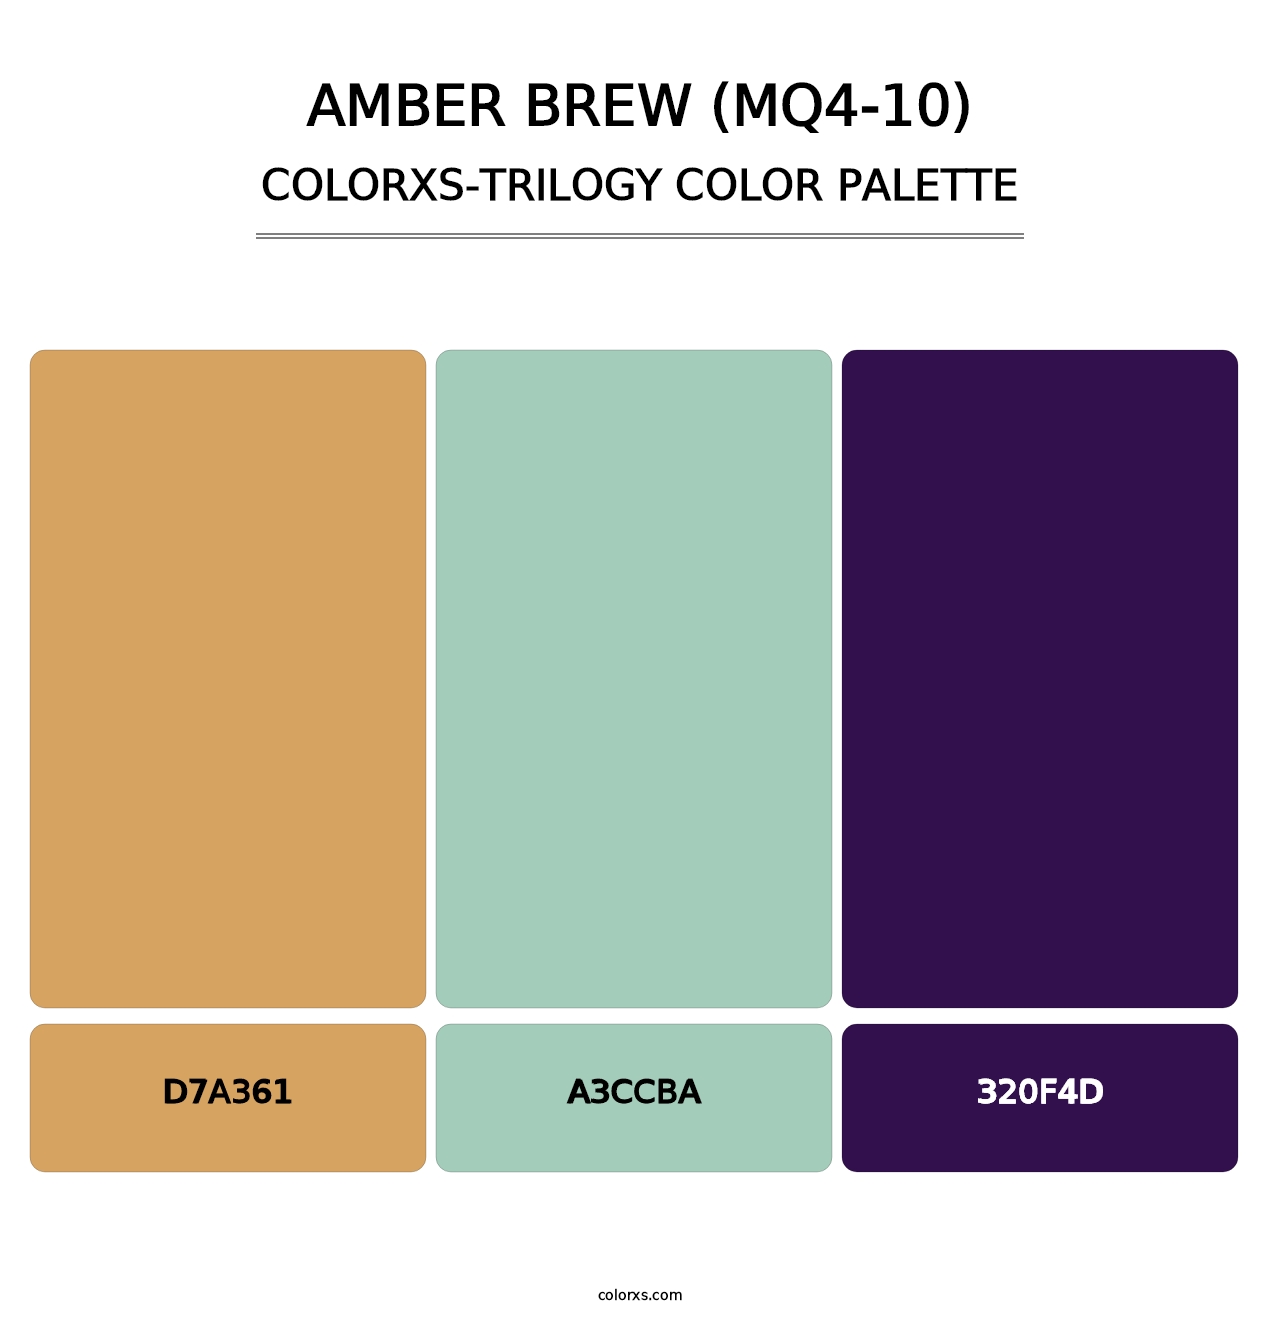 Amber Brew (MQ4-10) - Colorxs Trilogy Palette